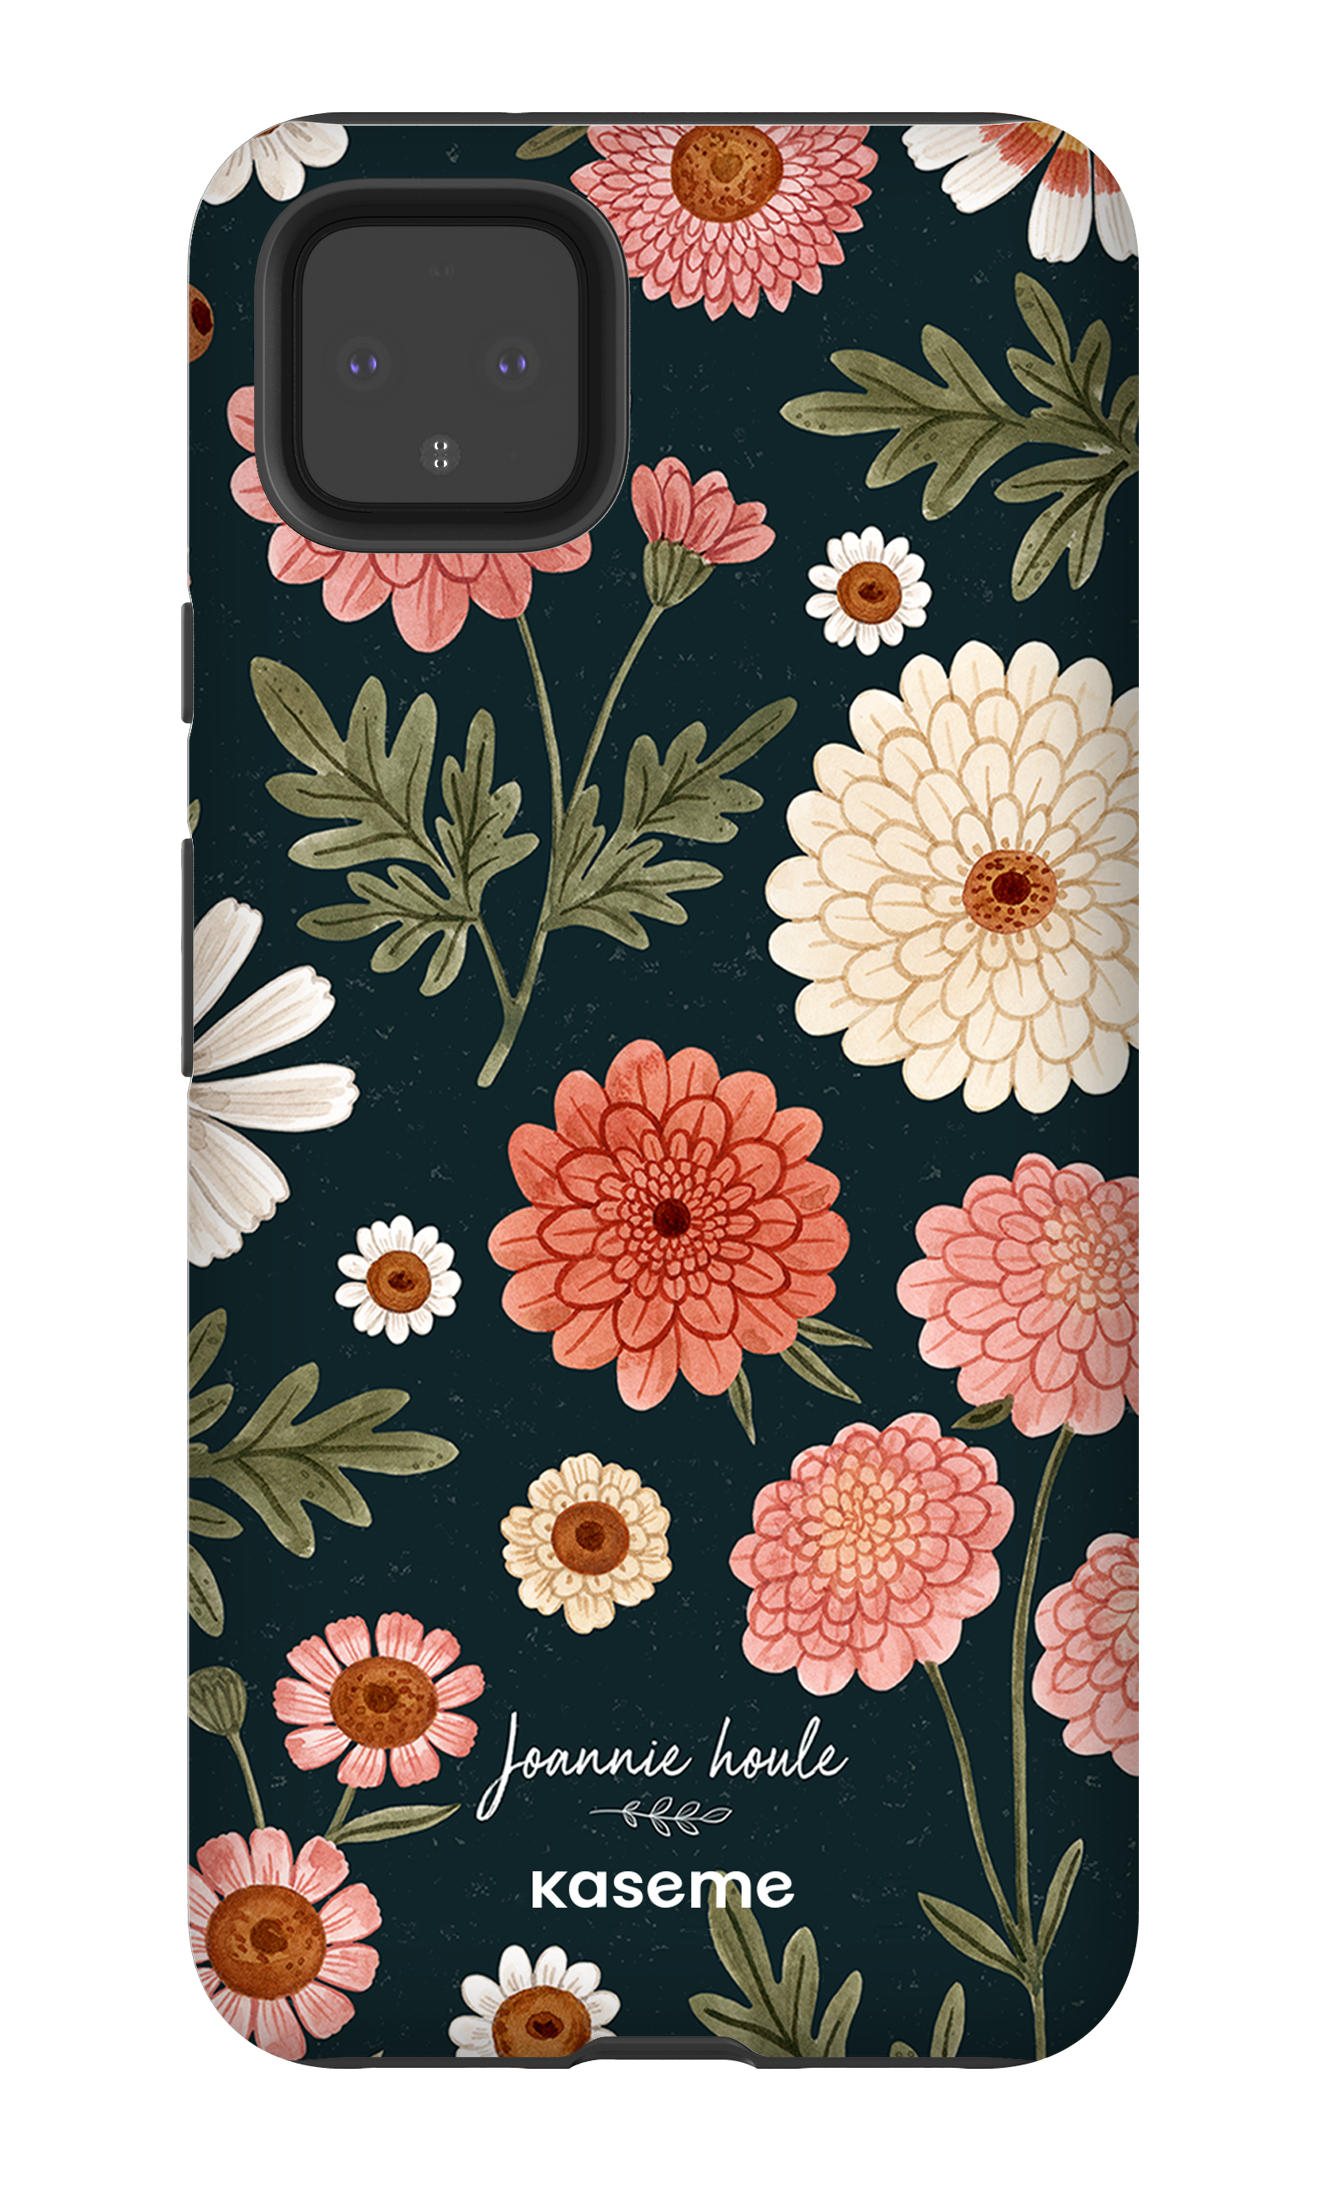 Chrysanthemums by Joannie Houle - Google Pixel 4 XL